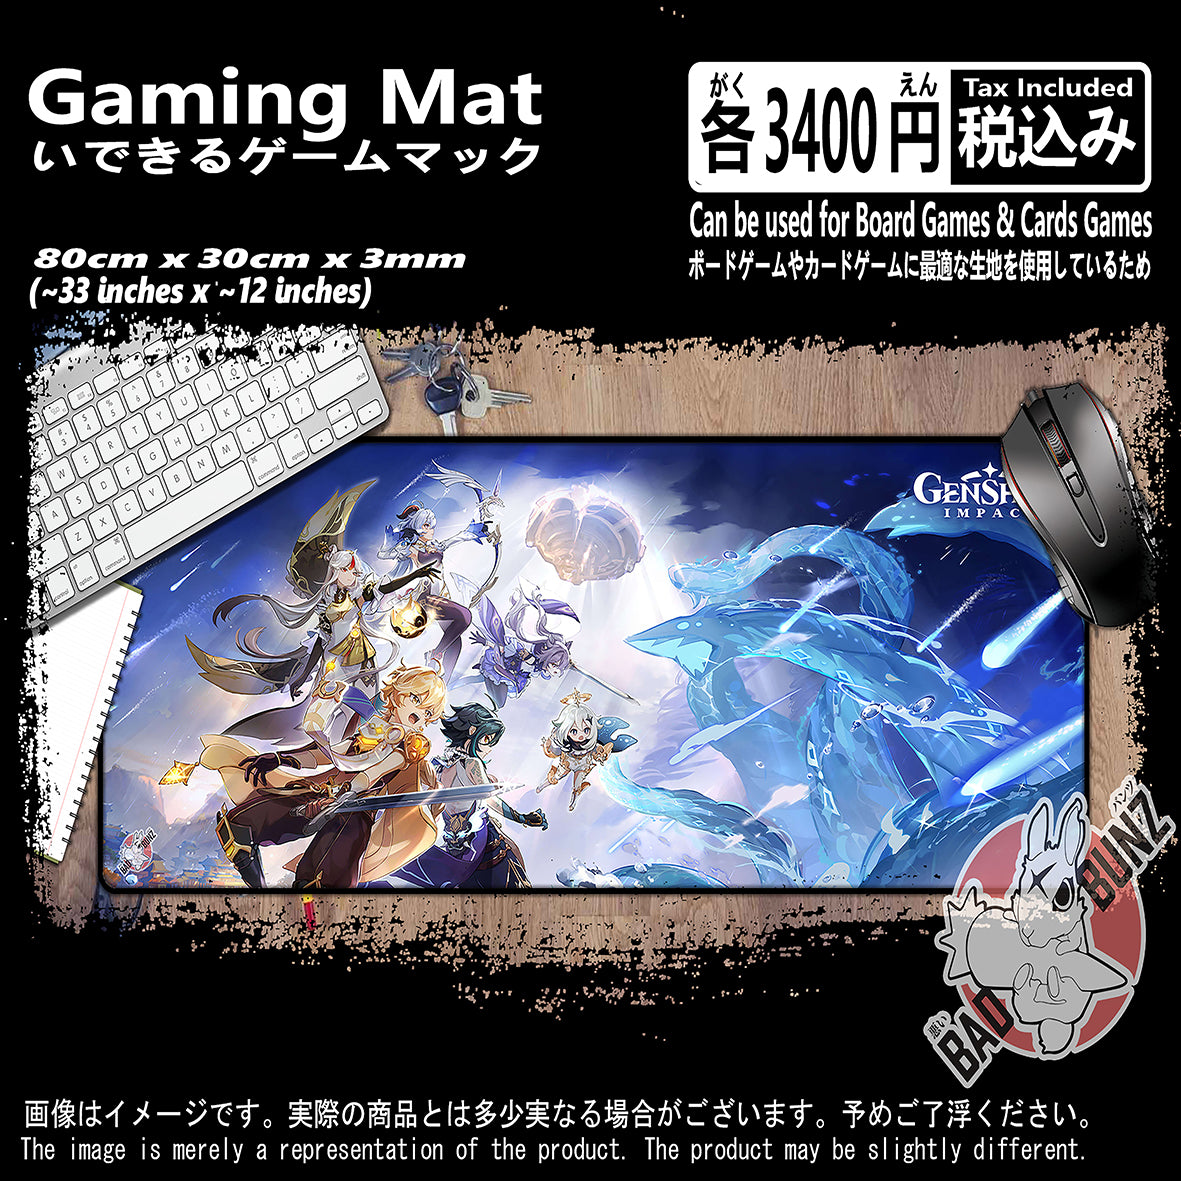 (GM-GSN-05) Genshin Impact Video Games 800mm x 300mm Gaming Play Mat